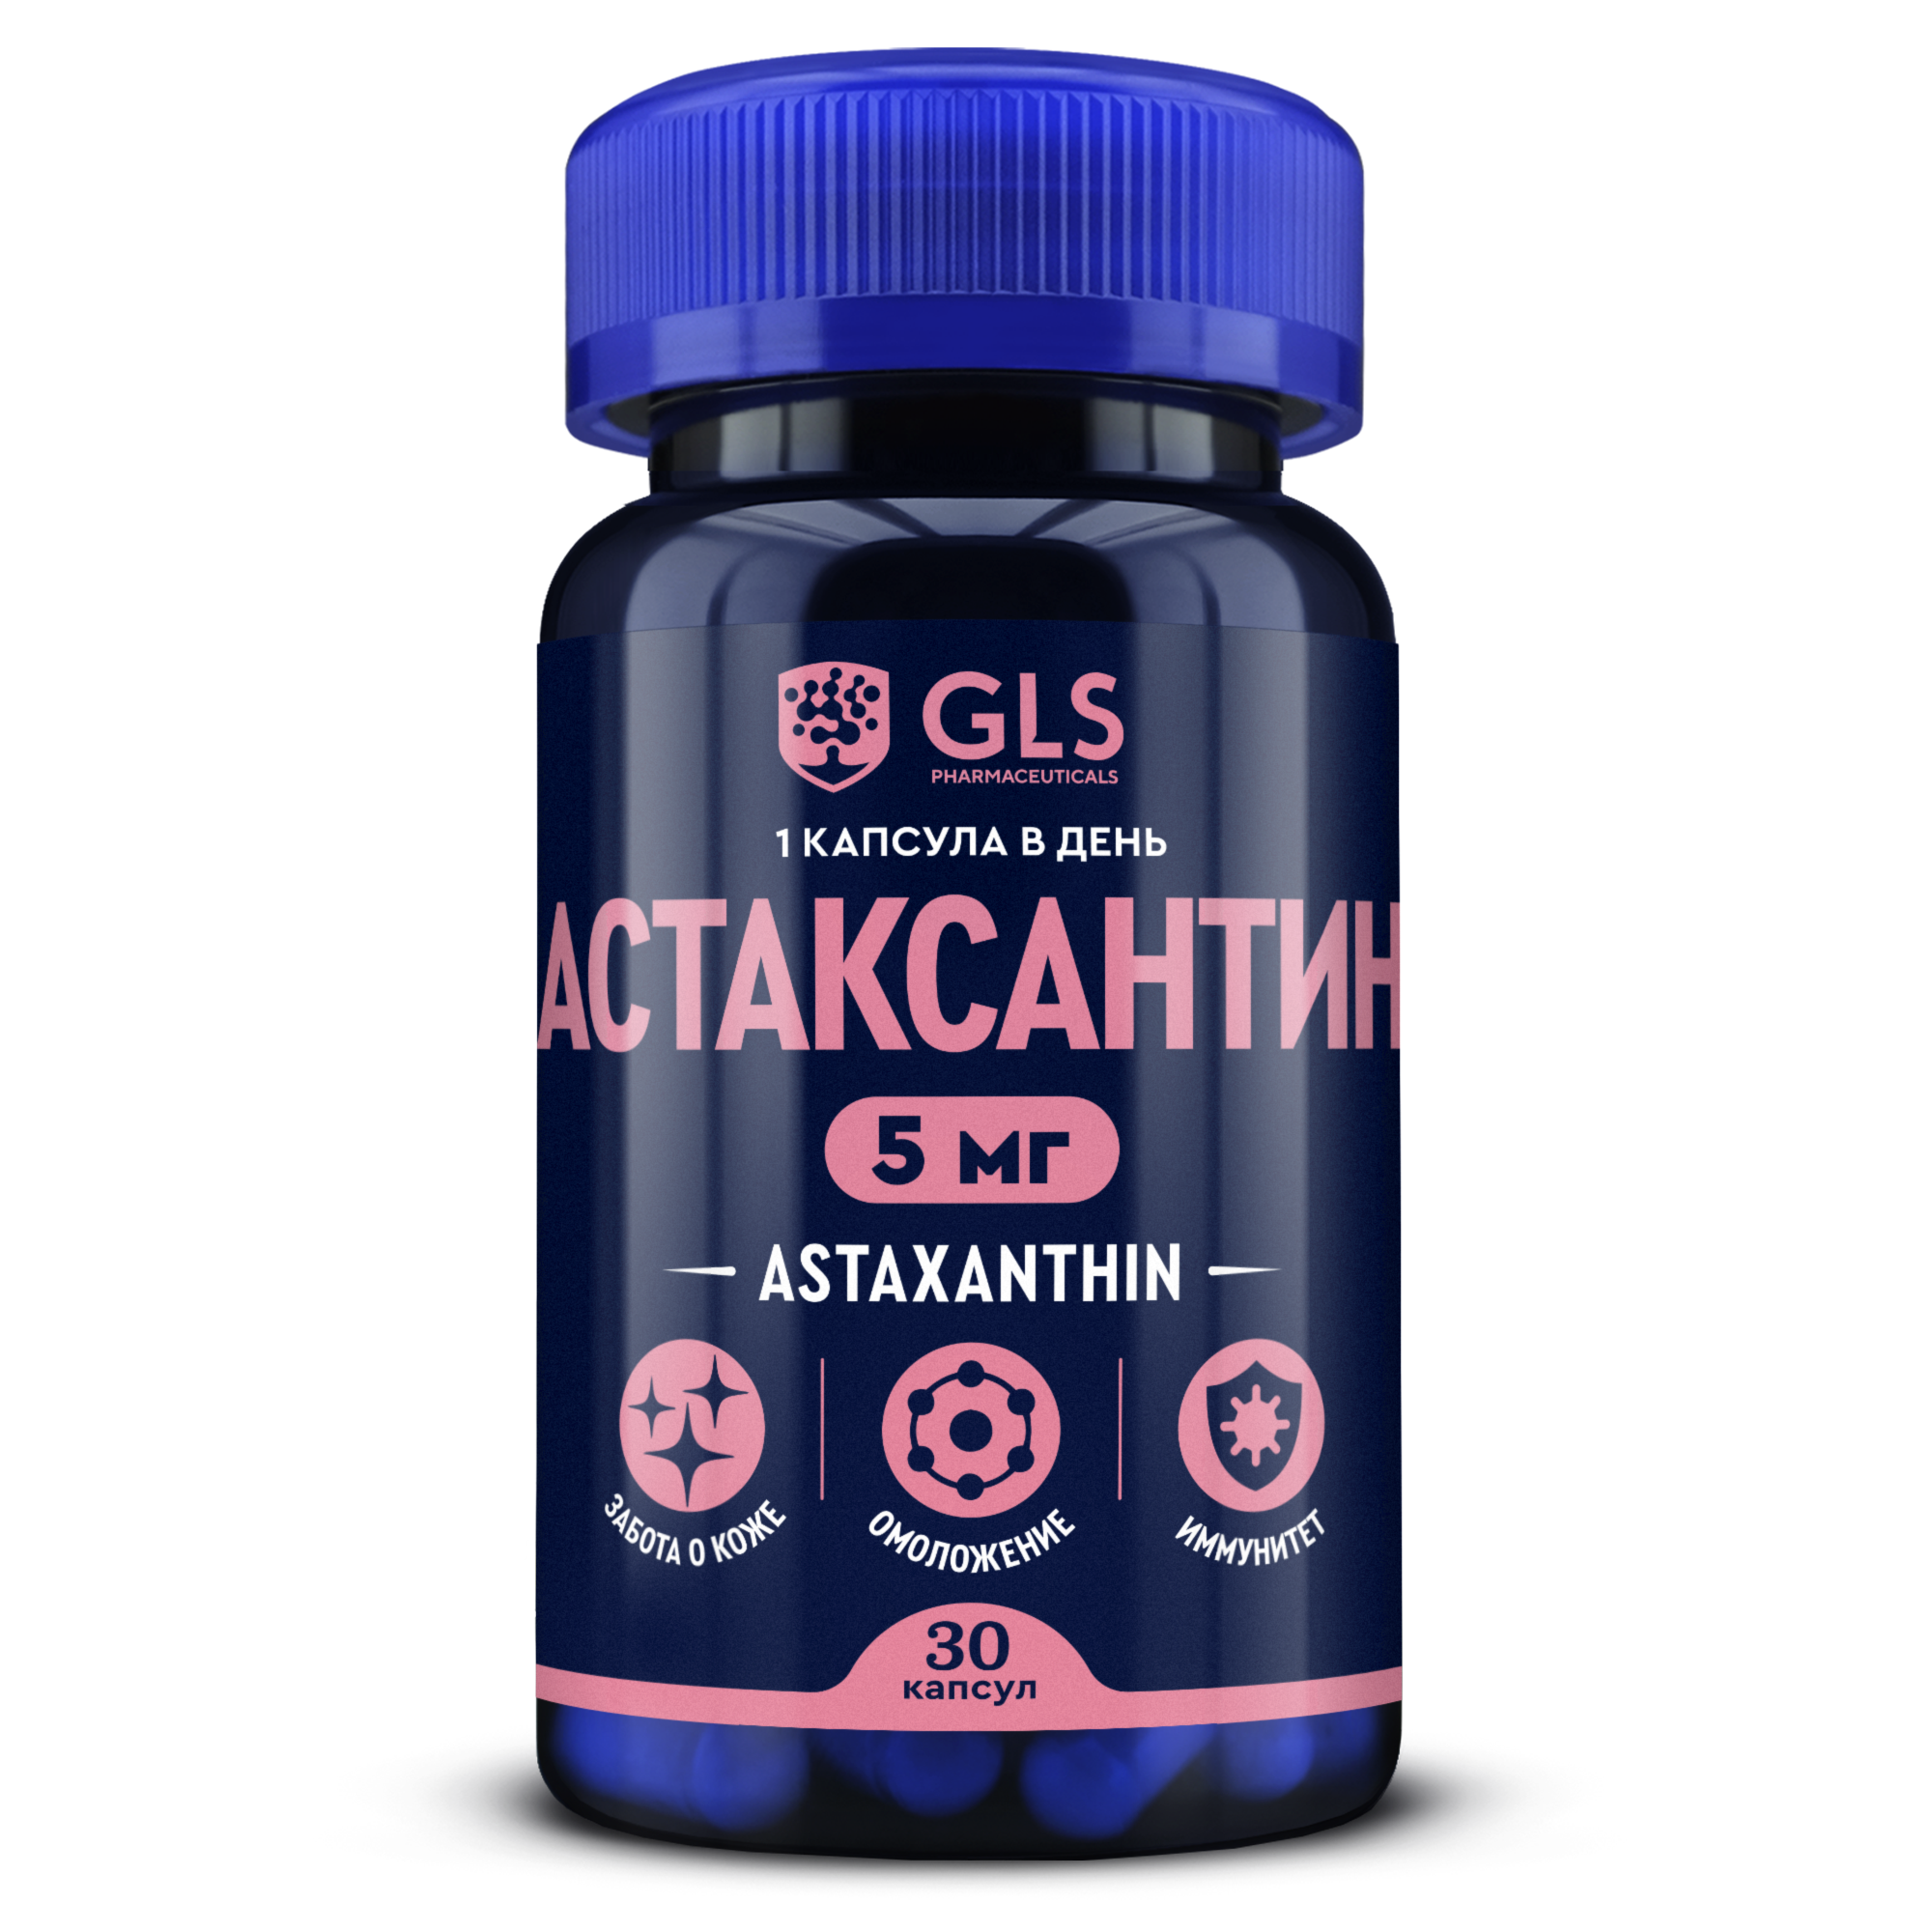 Биологически активная добавка GLS pharmaceuticals Астаксантин 5 мг, 30 капсул